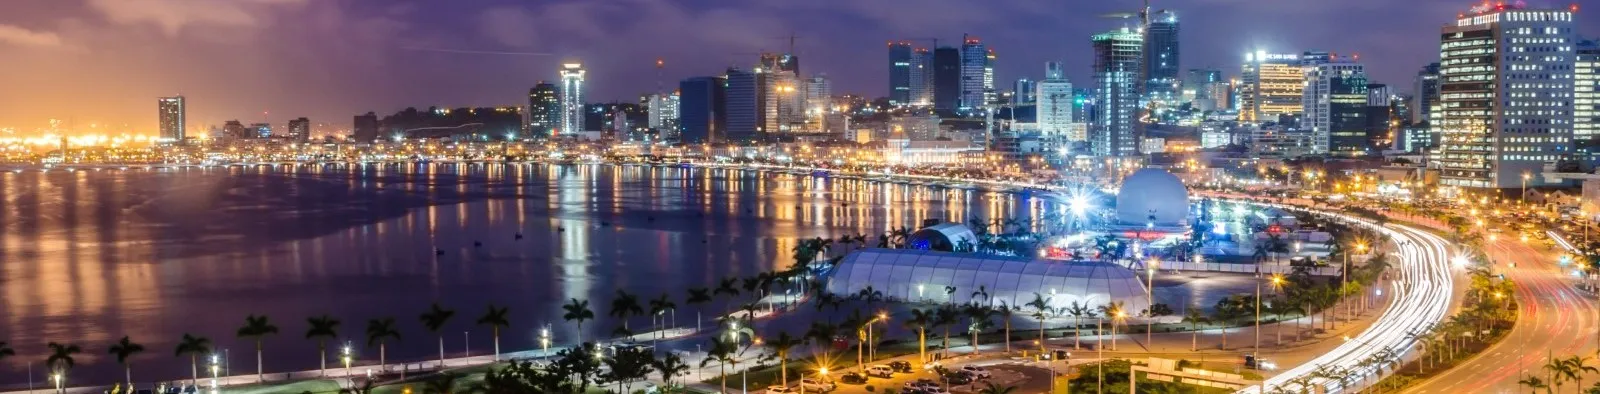 Angola Banner Image